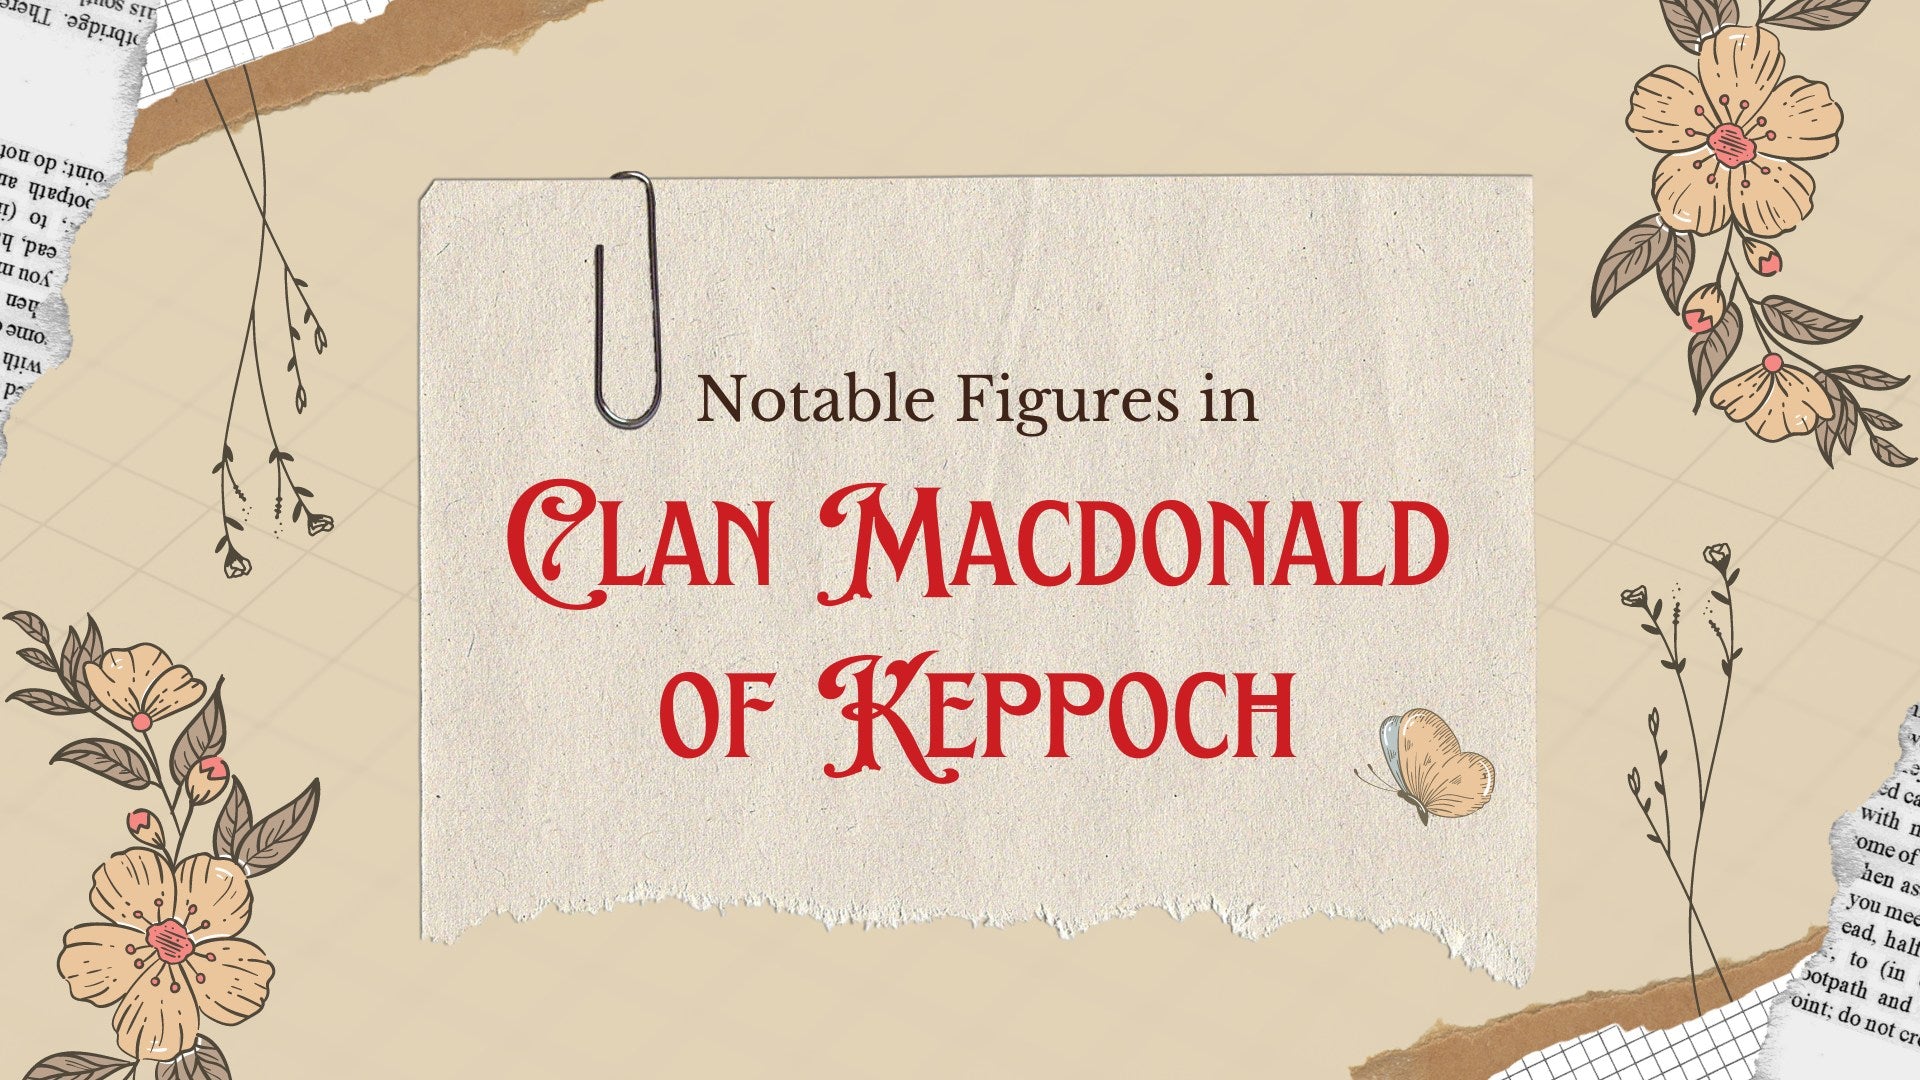 Notable Figures in Clan Macdonald of Keppoch